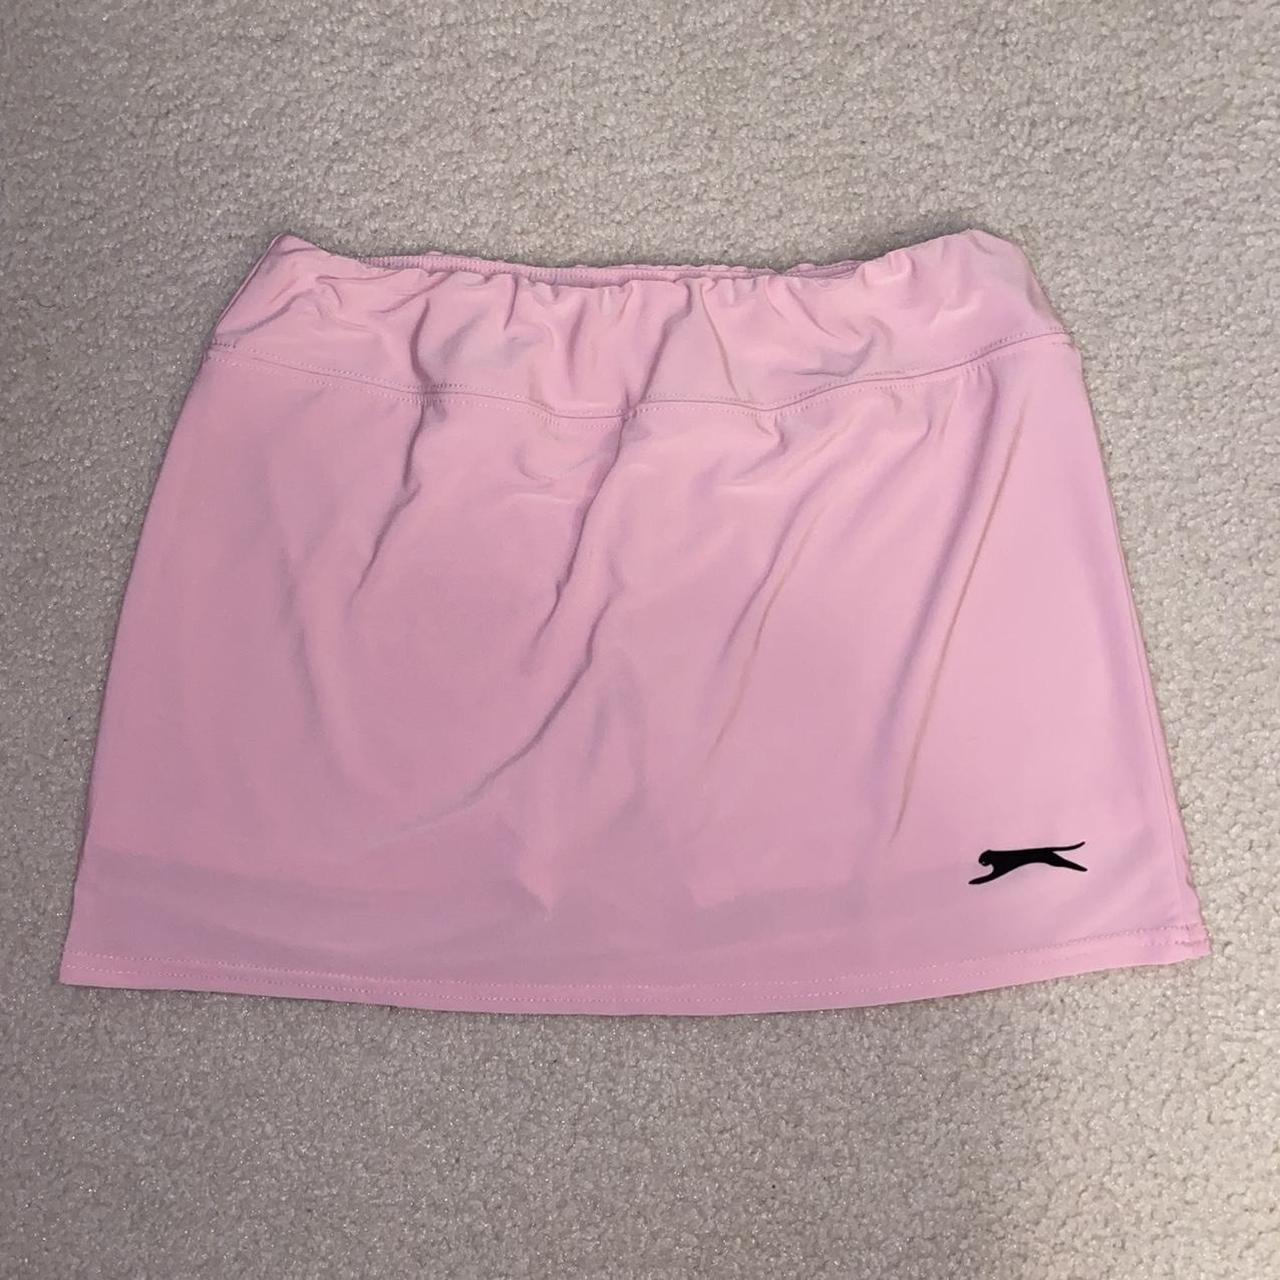 Slazenger Women's Pink Skirt (2)